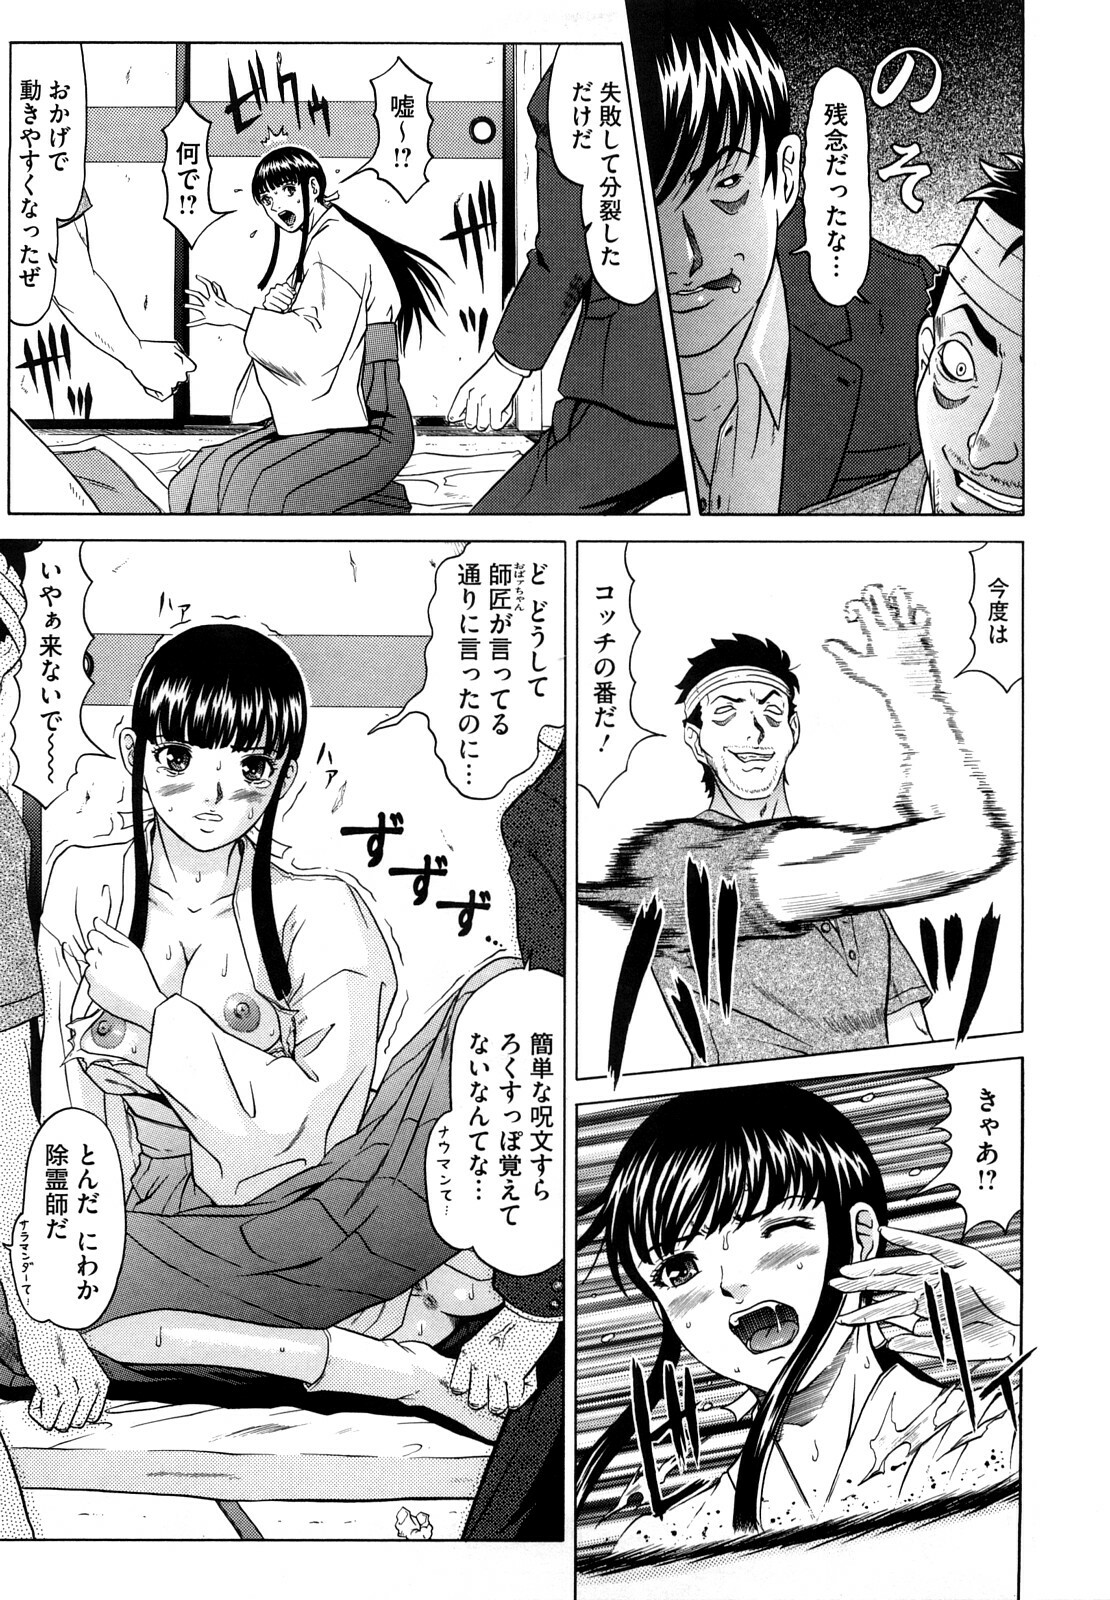 [Kurono Masakado] Nocturnal page 14 full